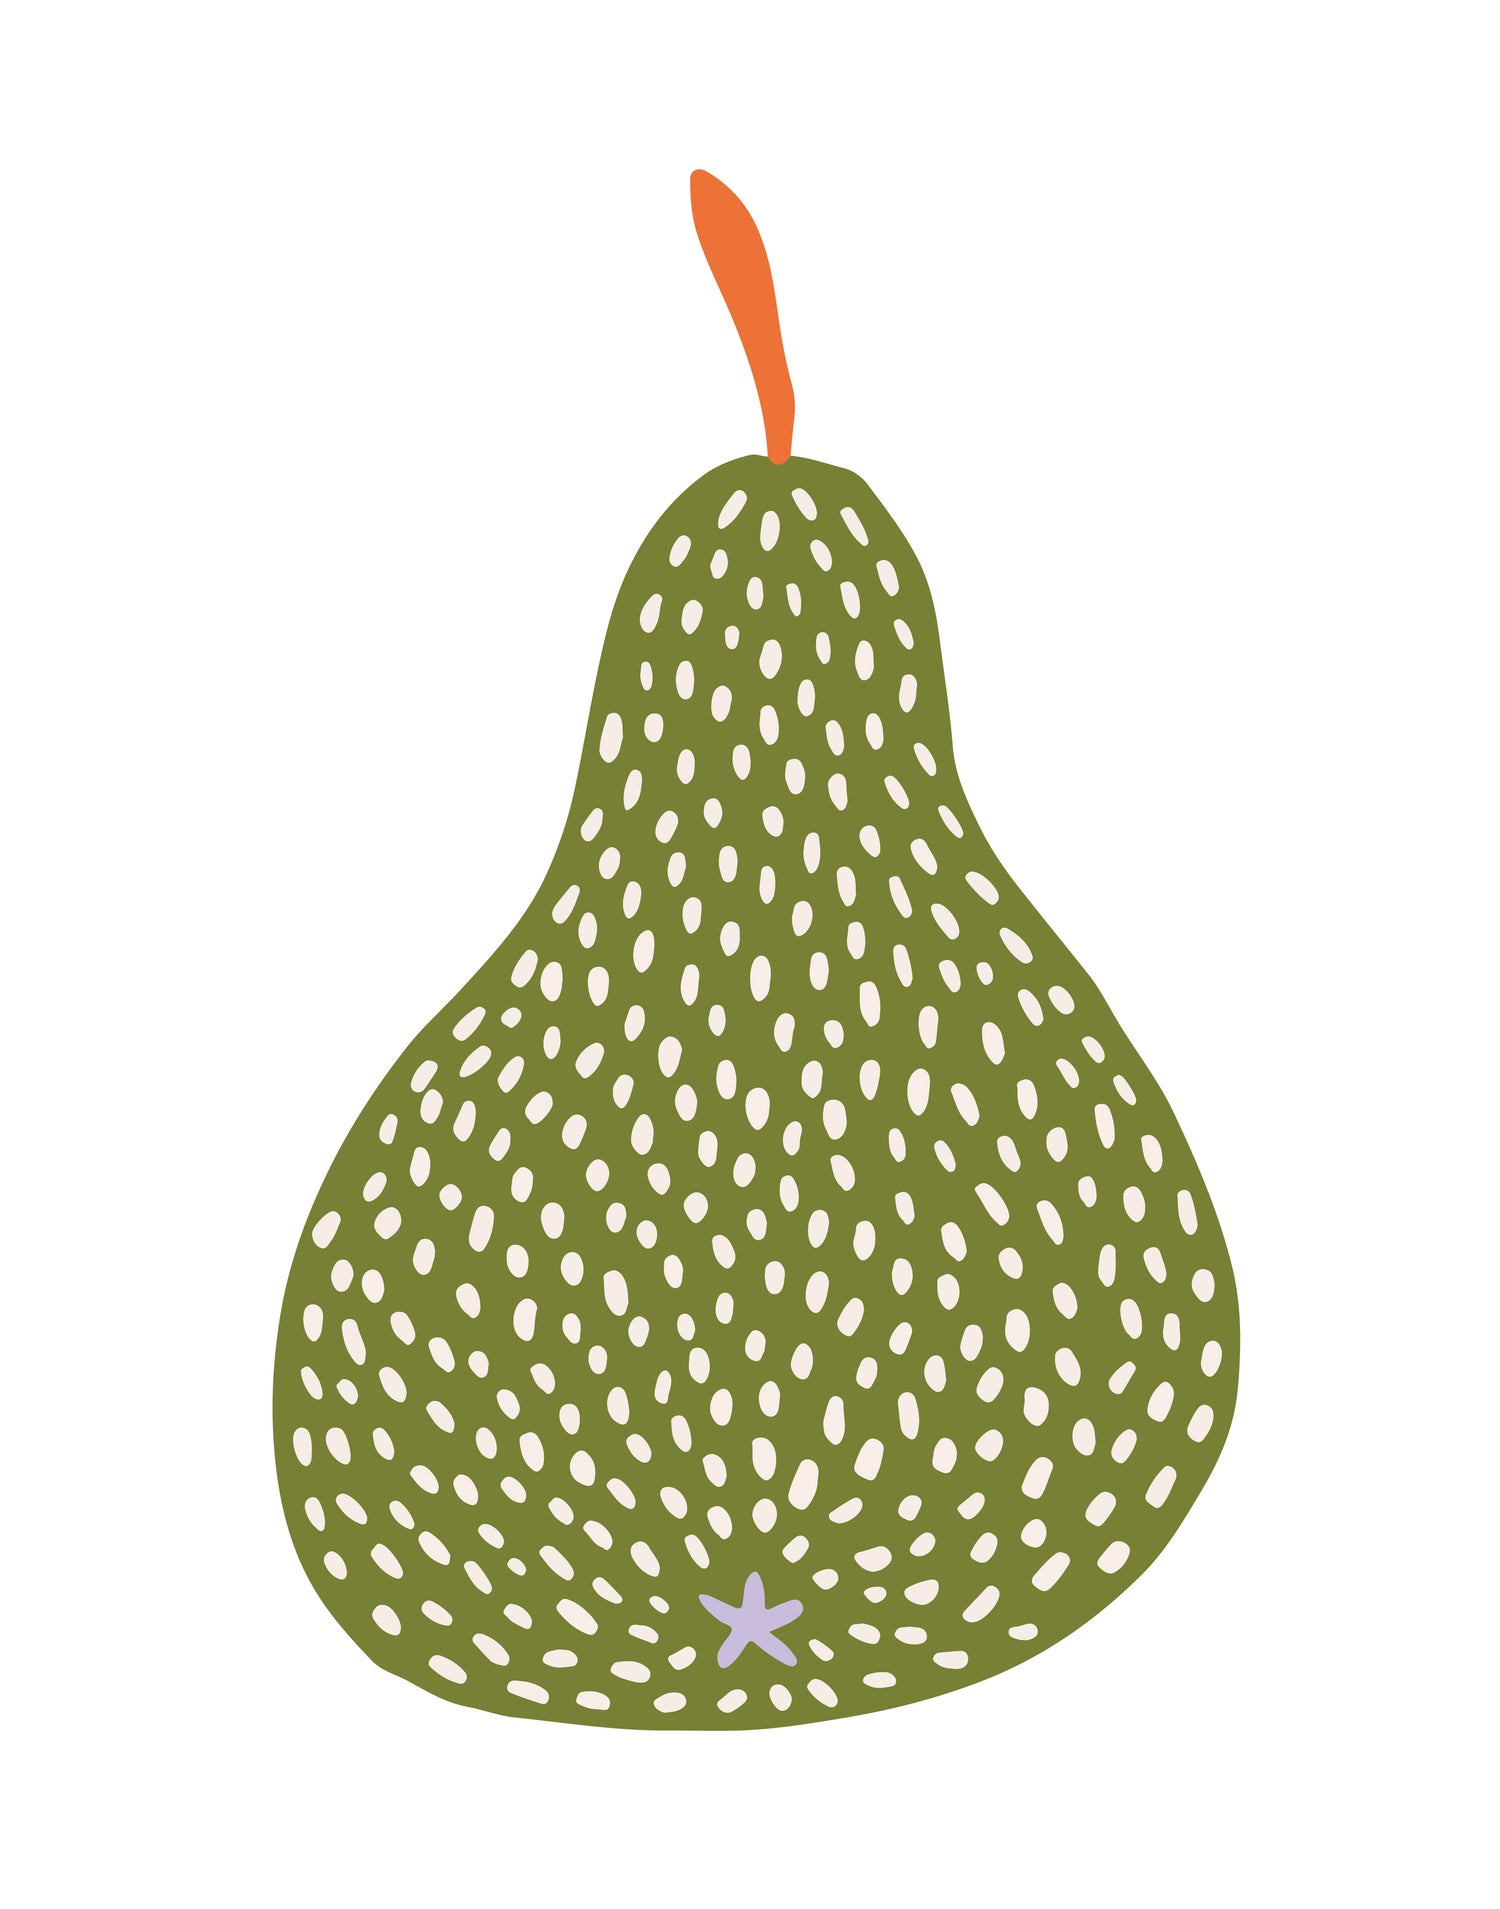 Pear Illustration by Freckled Fuchsia